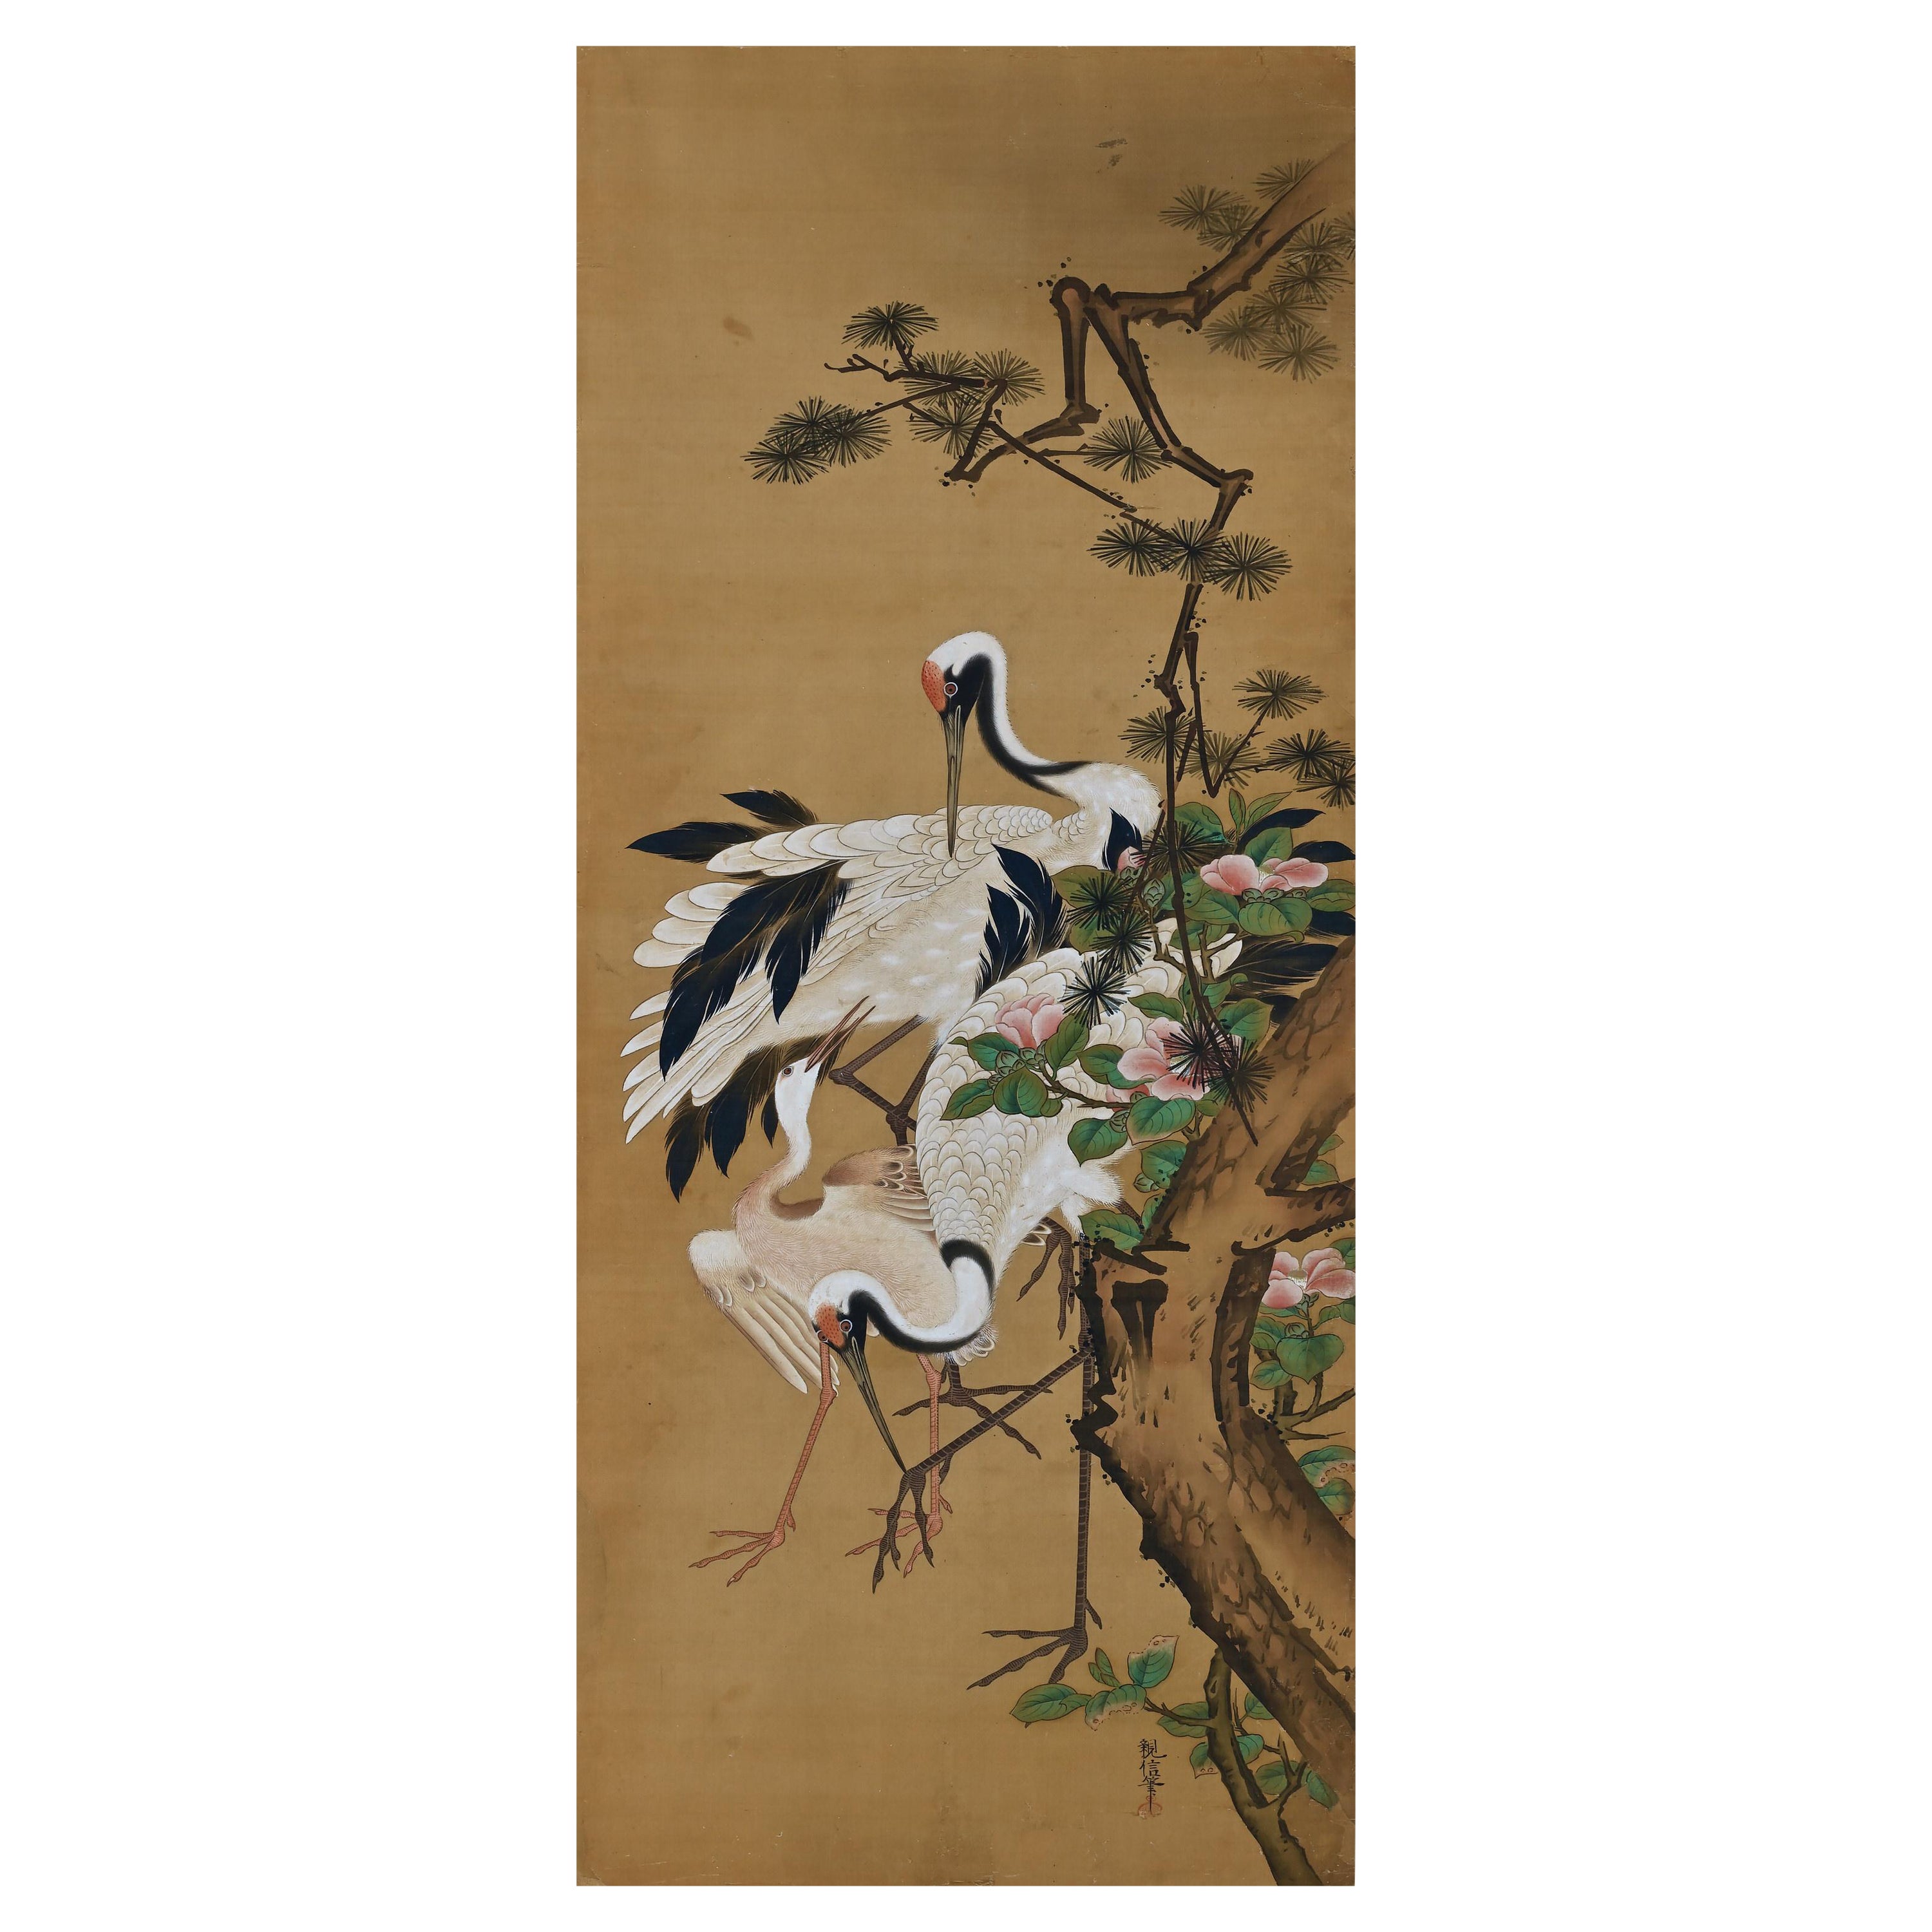 Japanisches Seidengemälde des 19. Jahrhunderts von Kano Chikanobu, Kranich, Kiefer und Kamelie